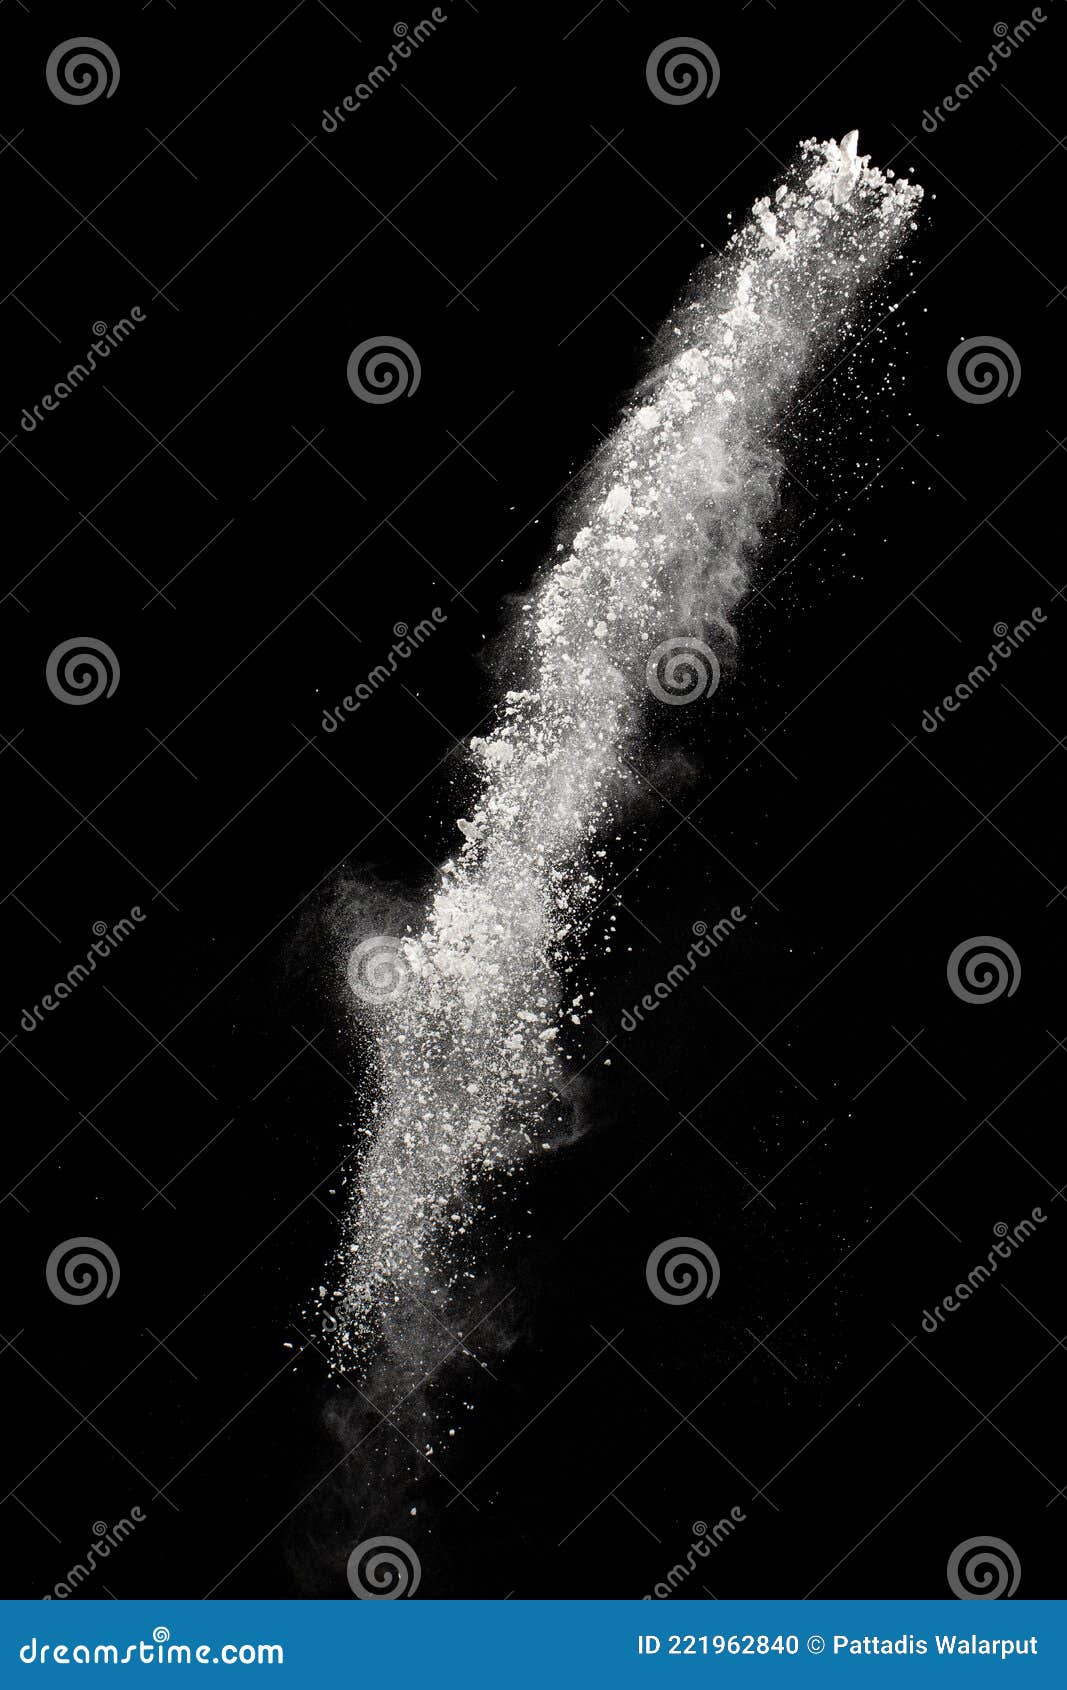 white dust particles splashing. freez motion of talcum powder burst in dark background